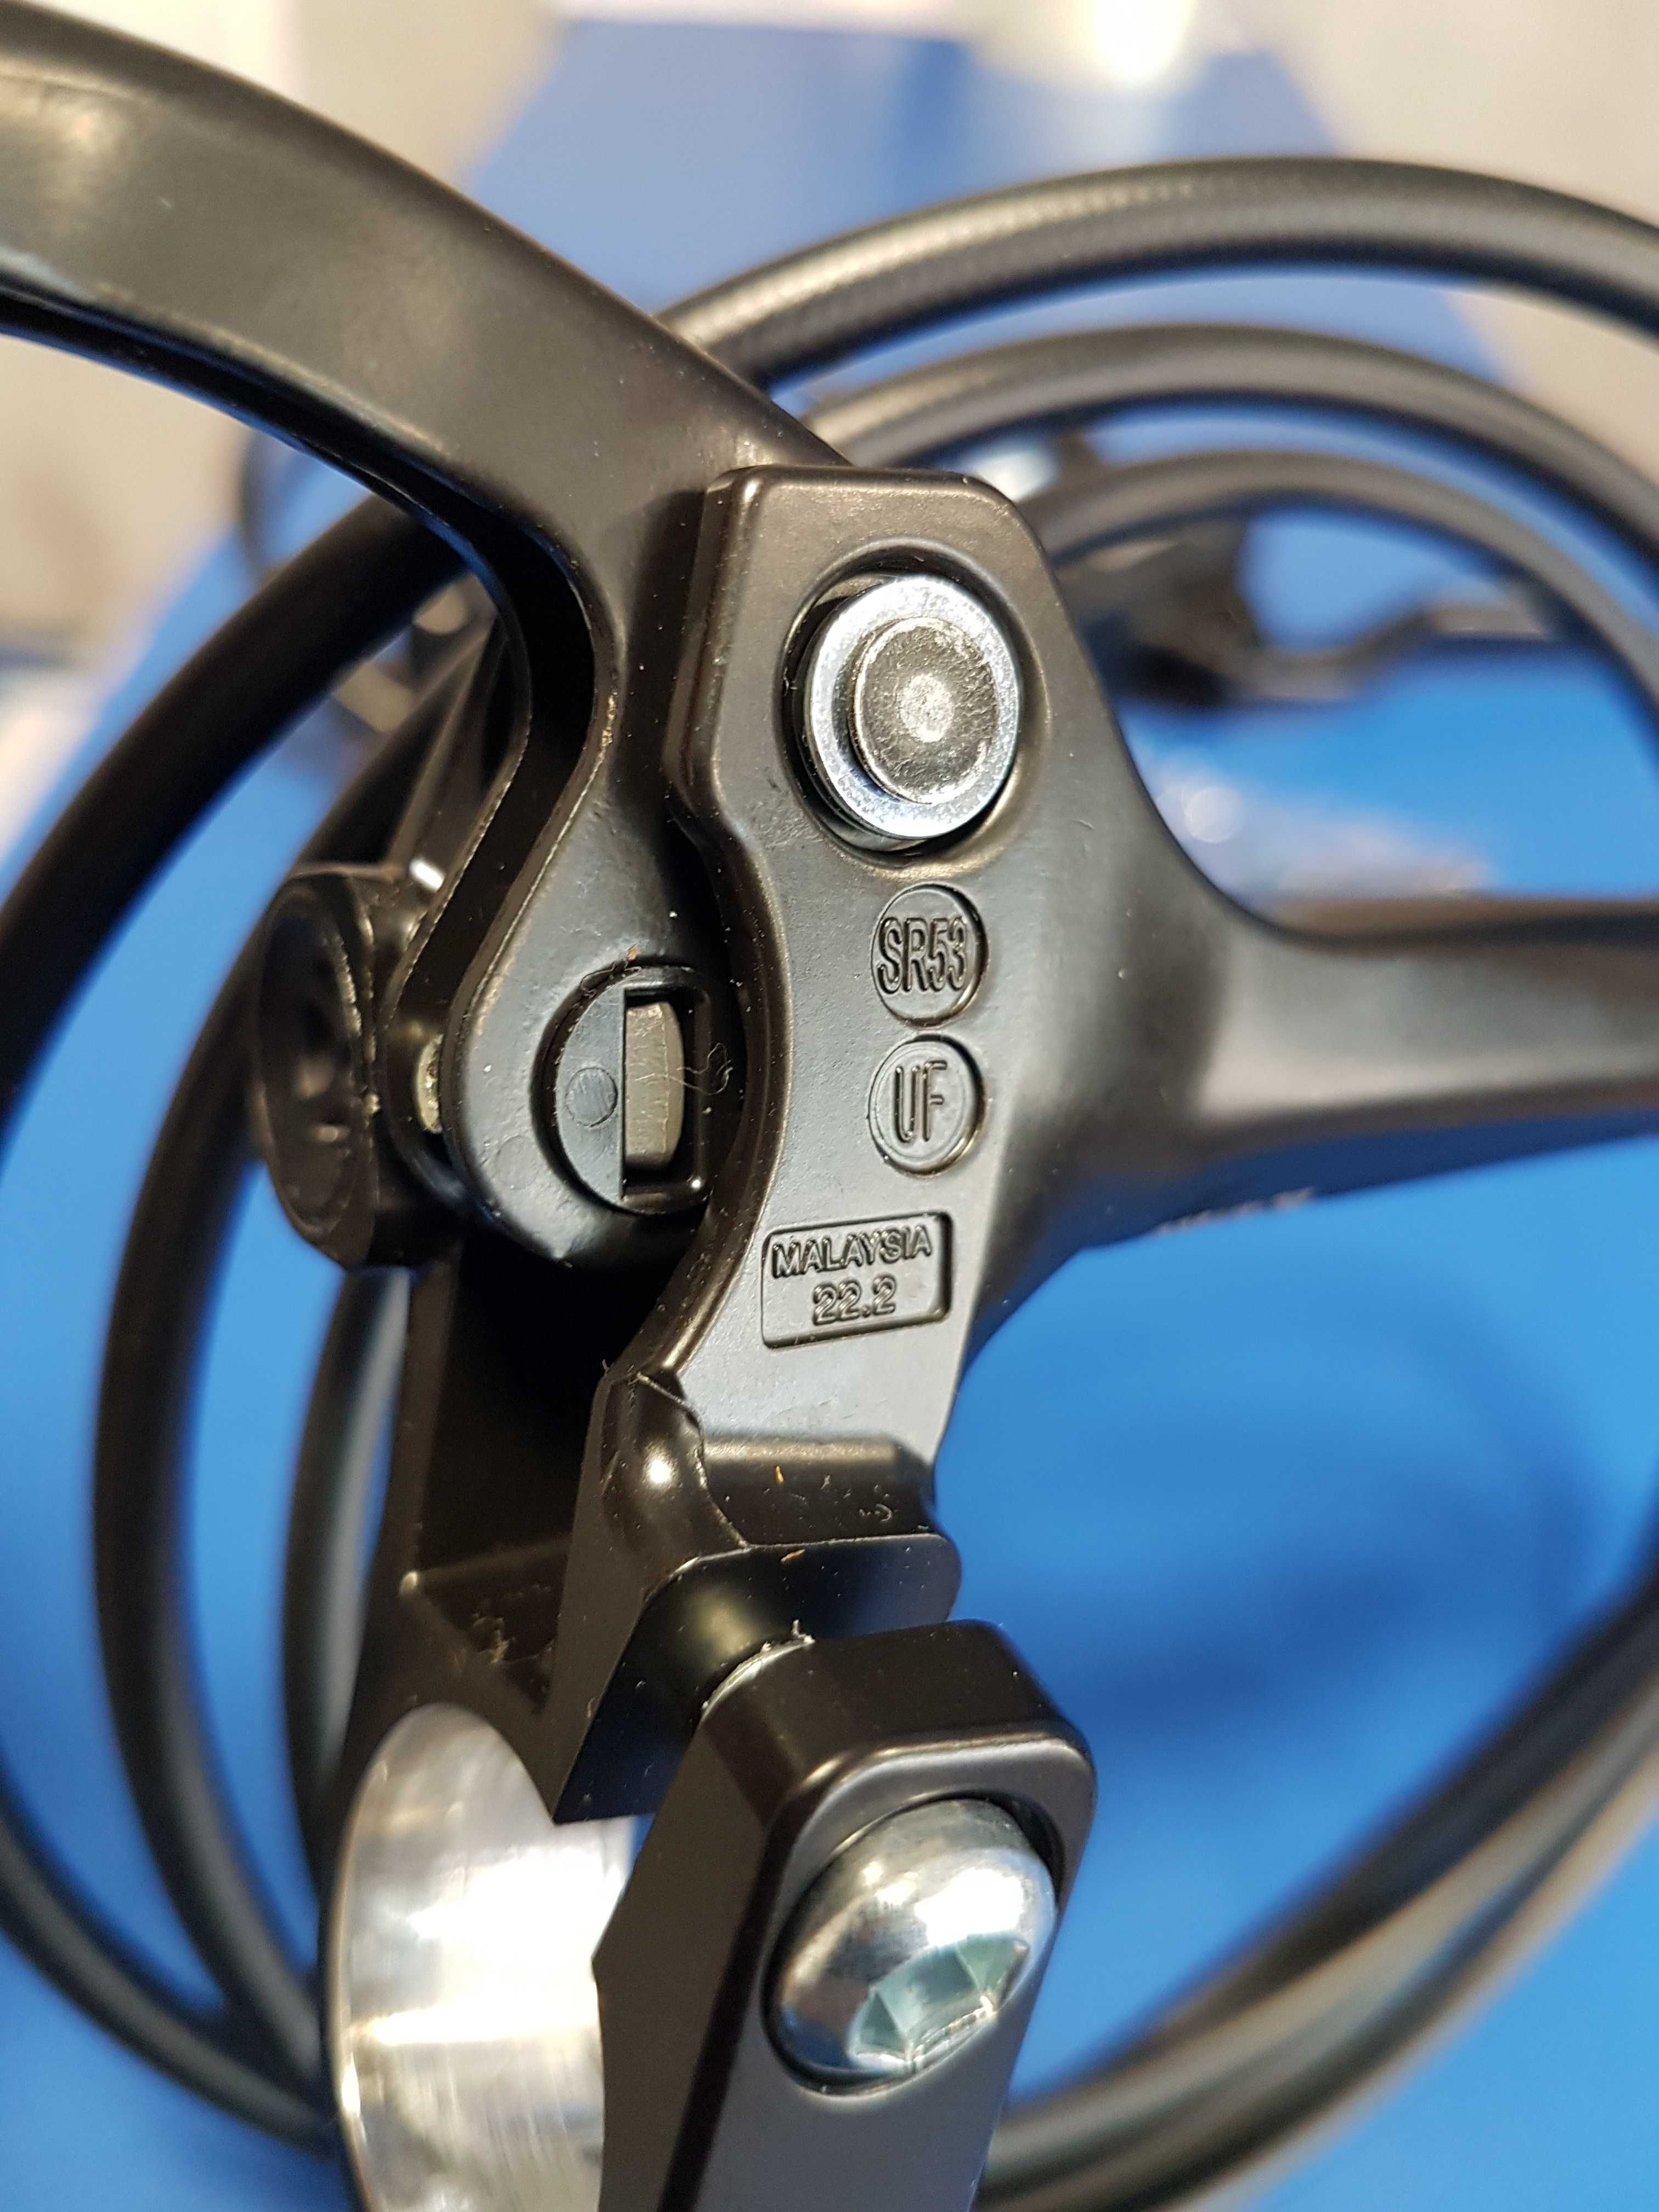 Тормоз гідравлічний Shimano MT200 передній + задній / Адаптери